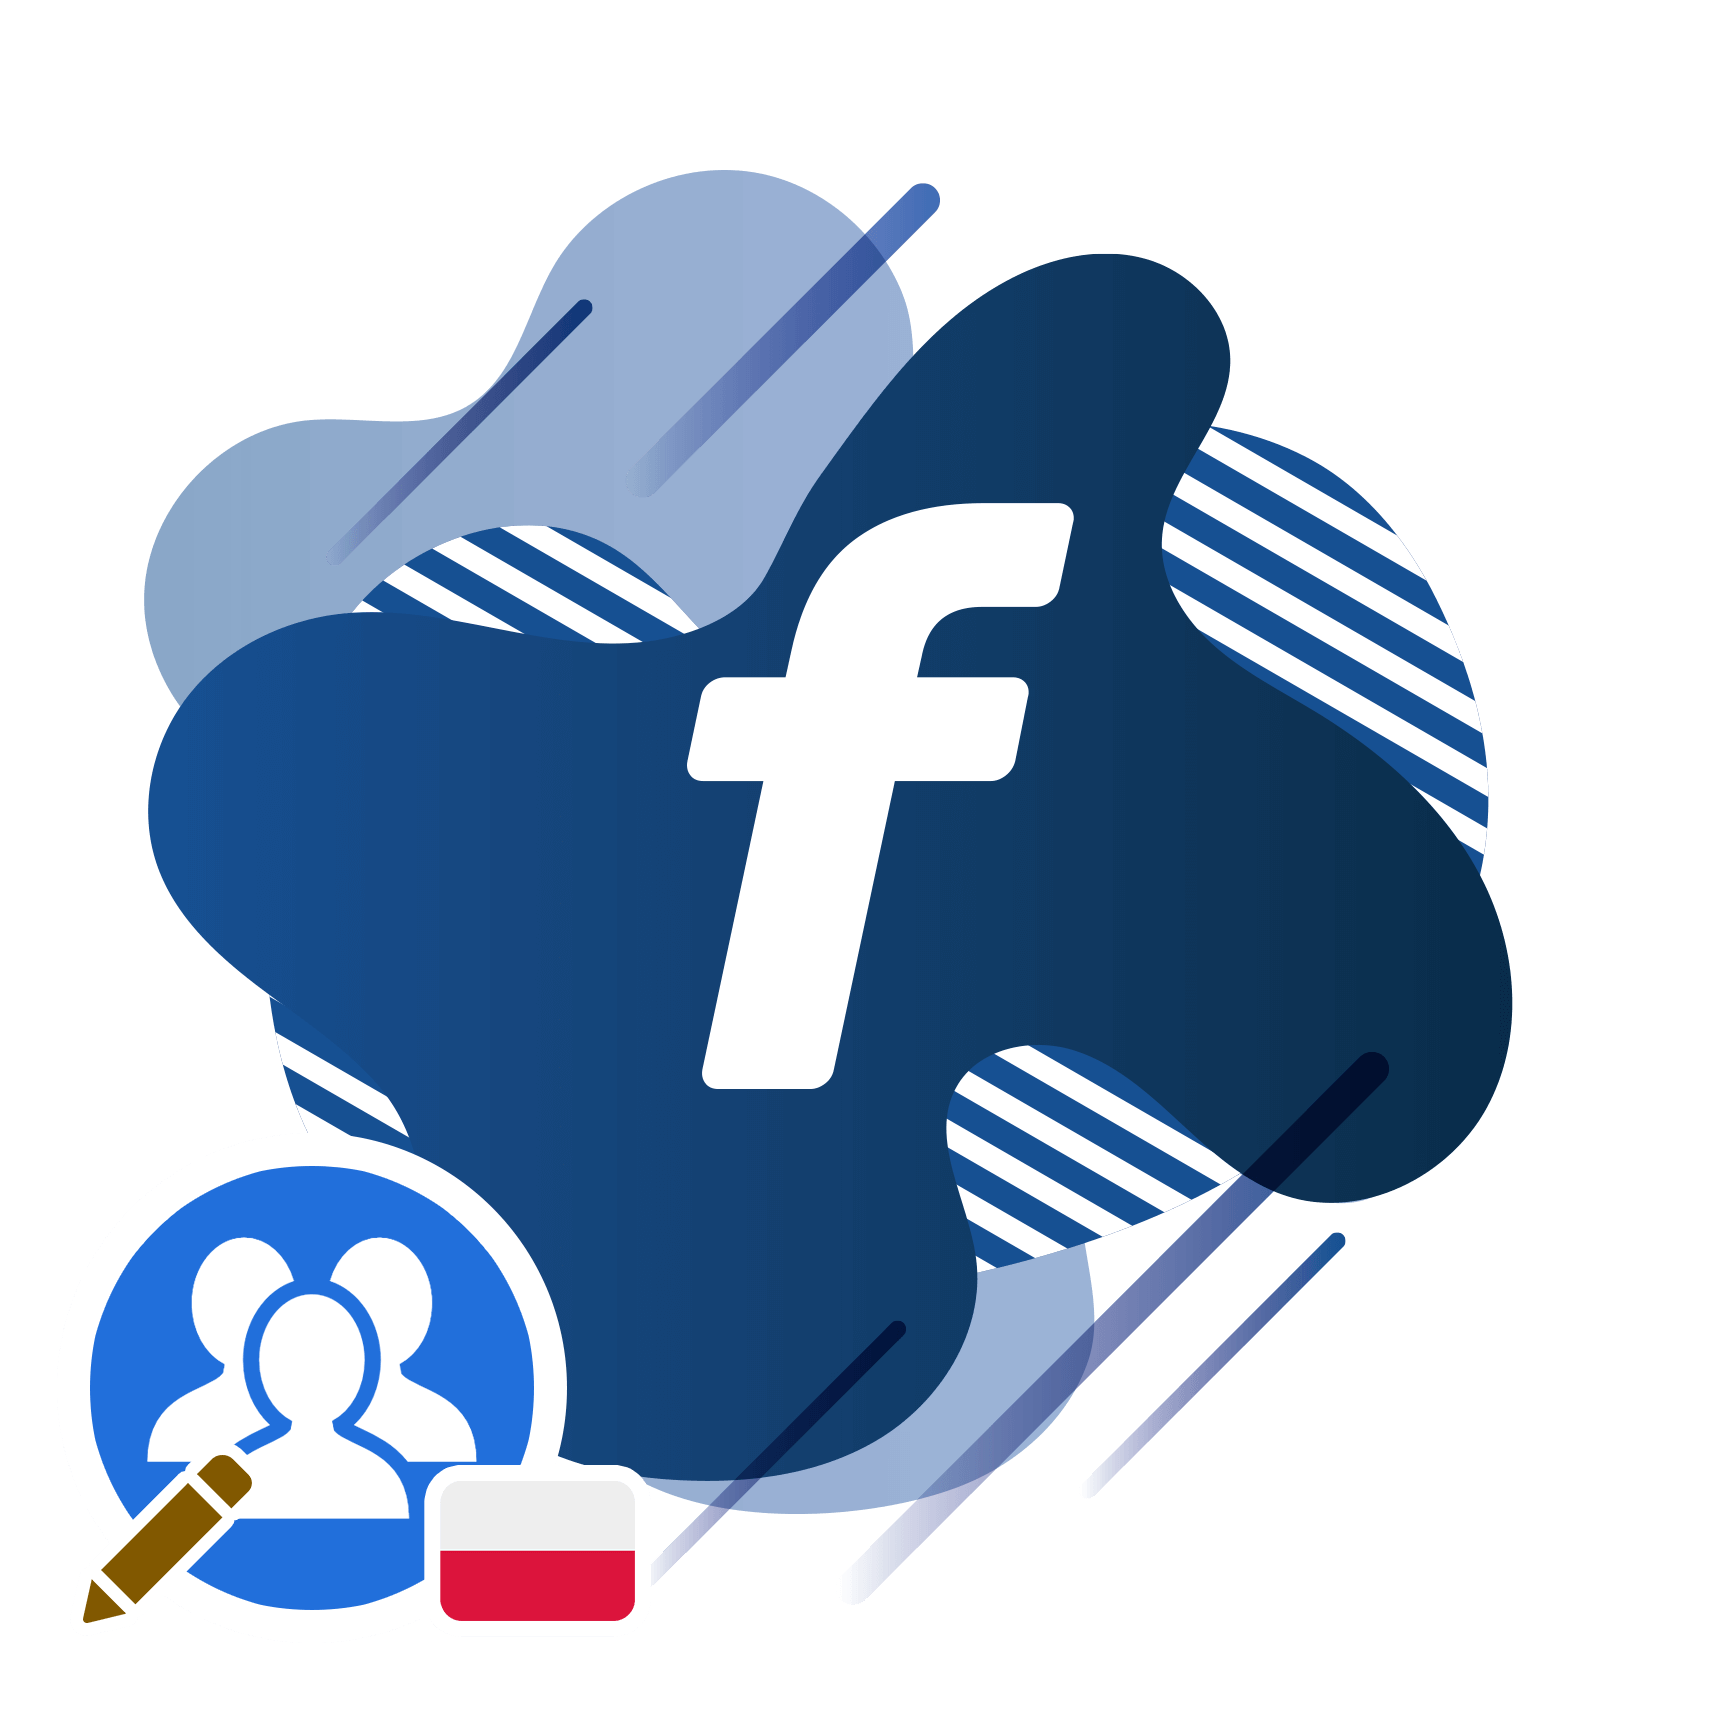 facebook-grupa-otwarta-i-zamknięta-dodawanie-postów